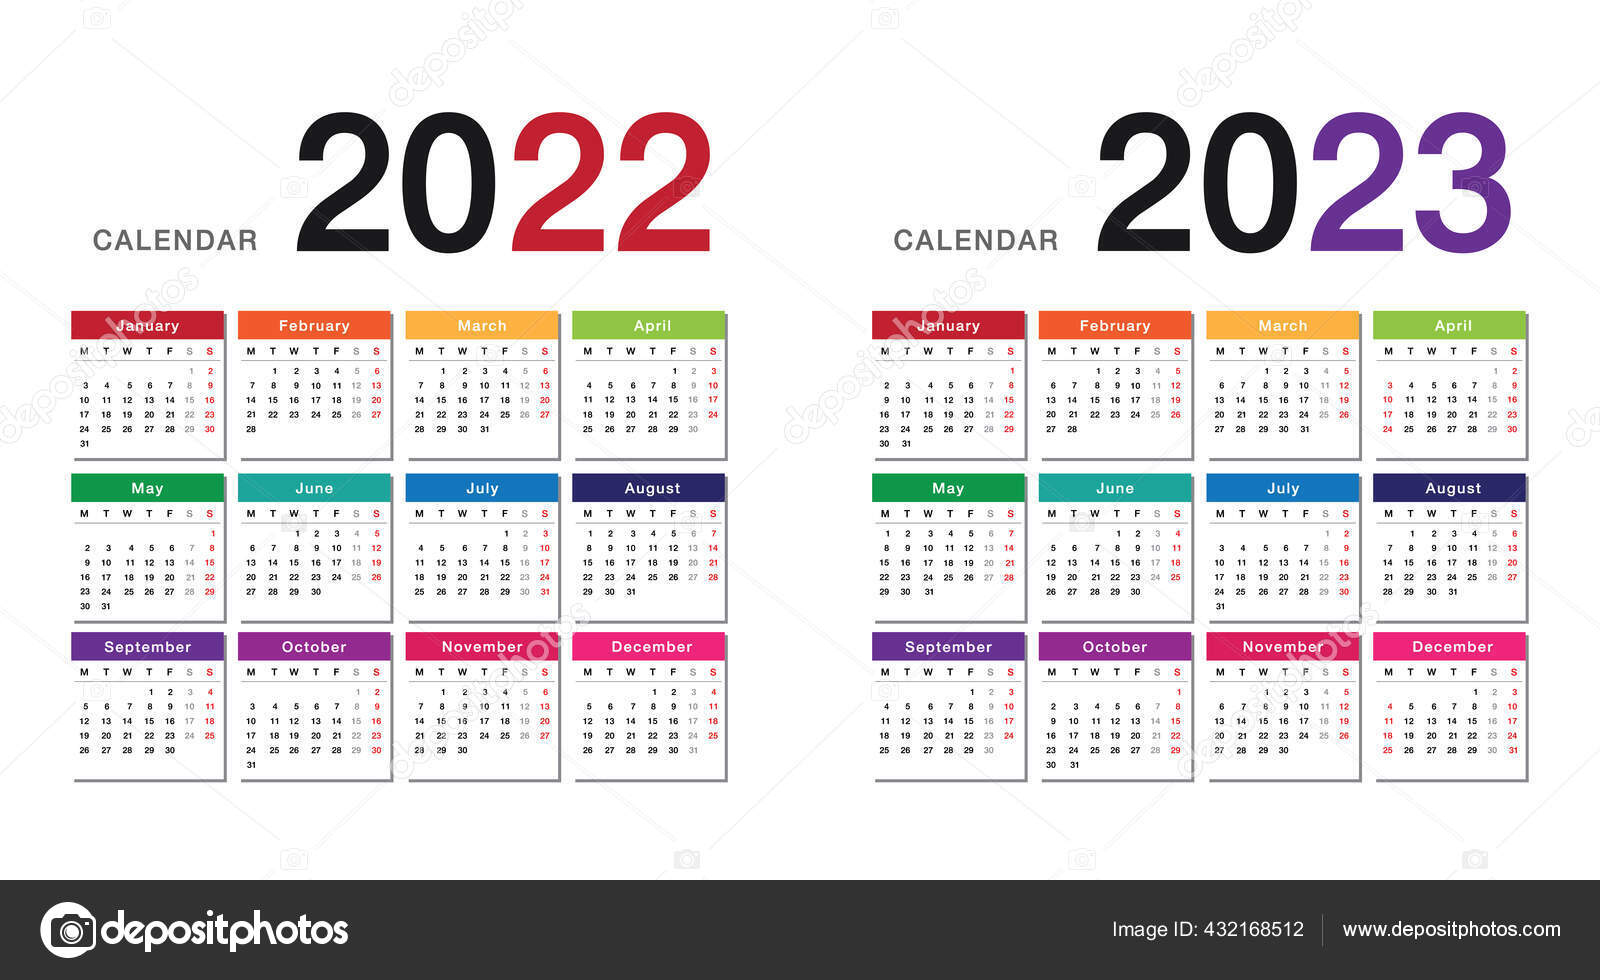 Kalender 2023 lengkap dengan tanggal merah